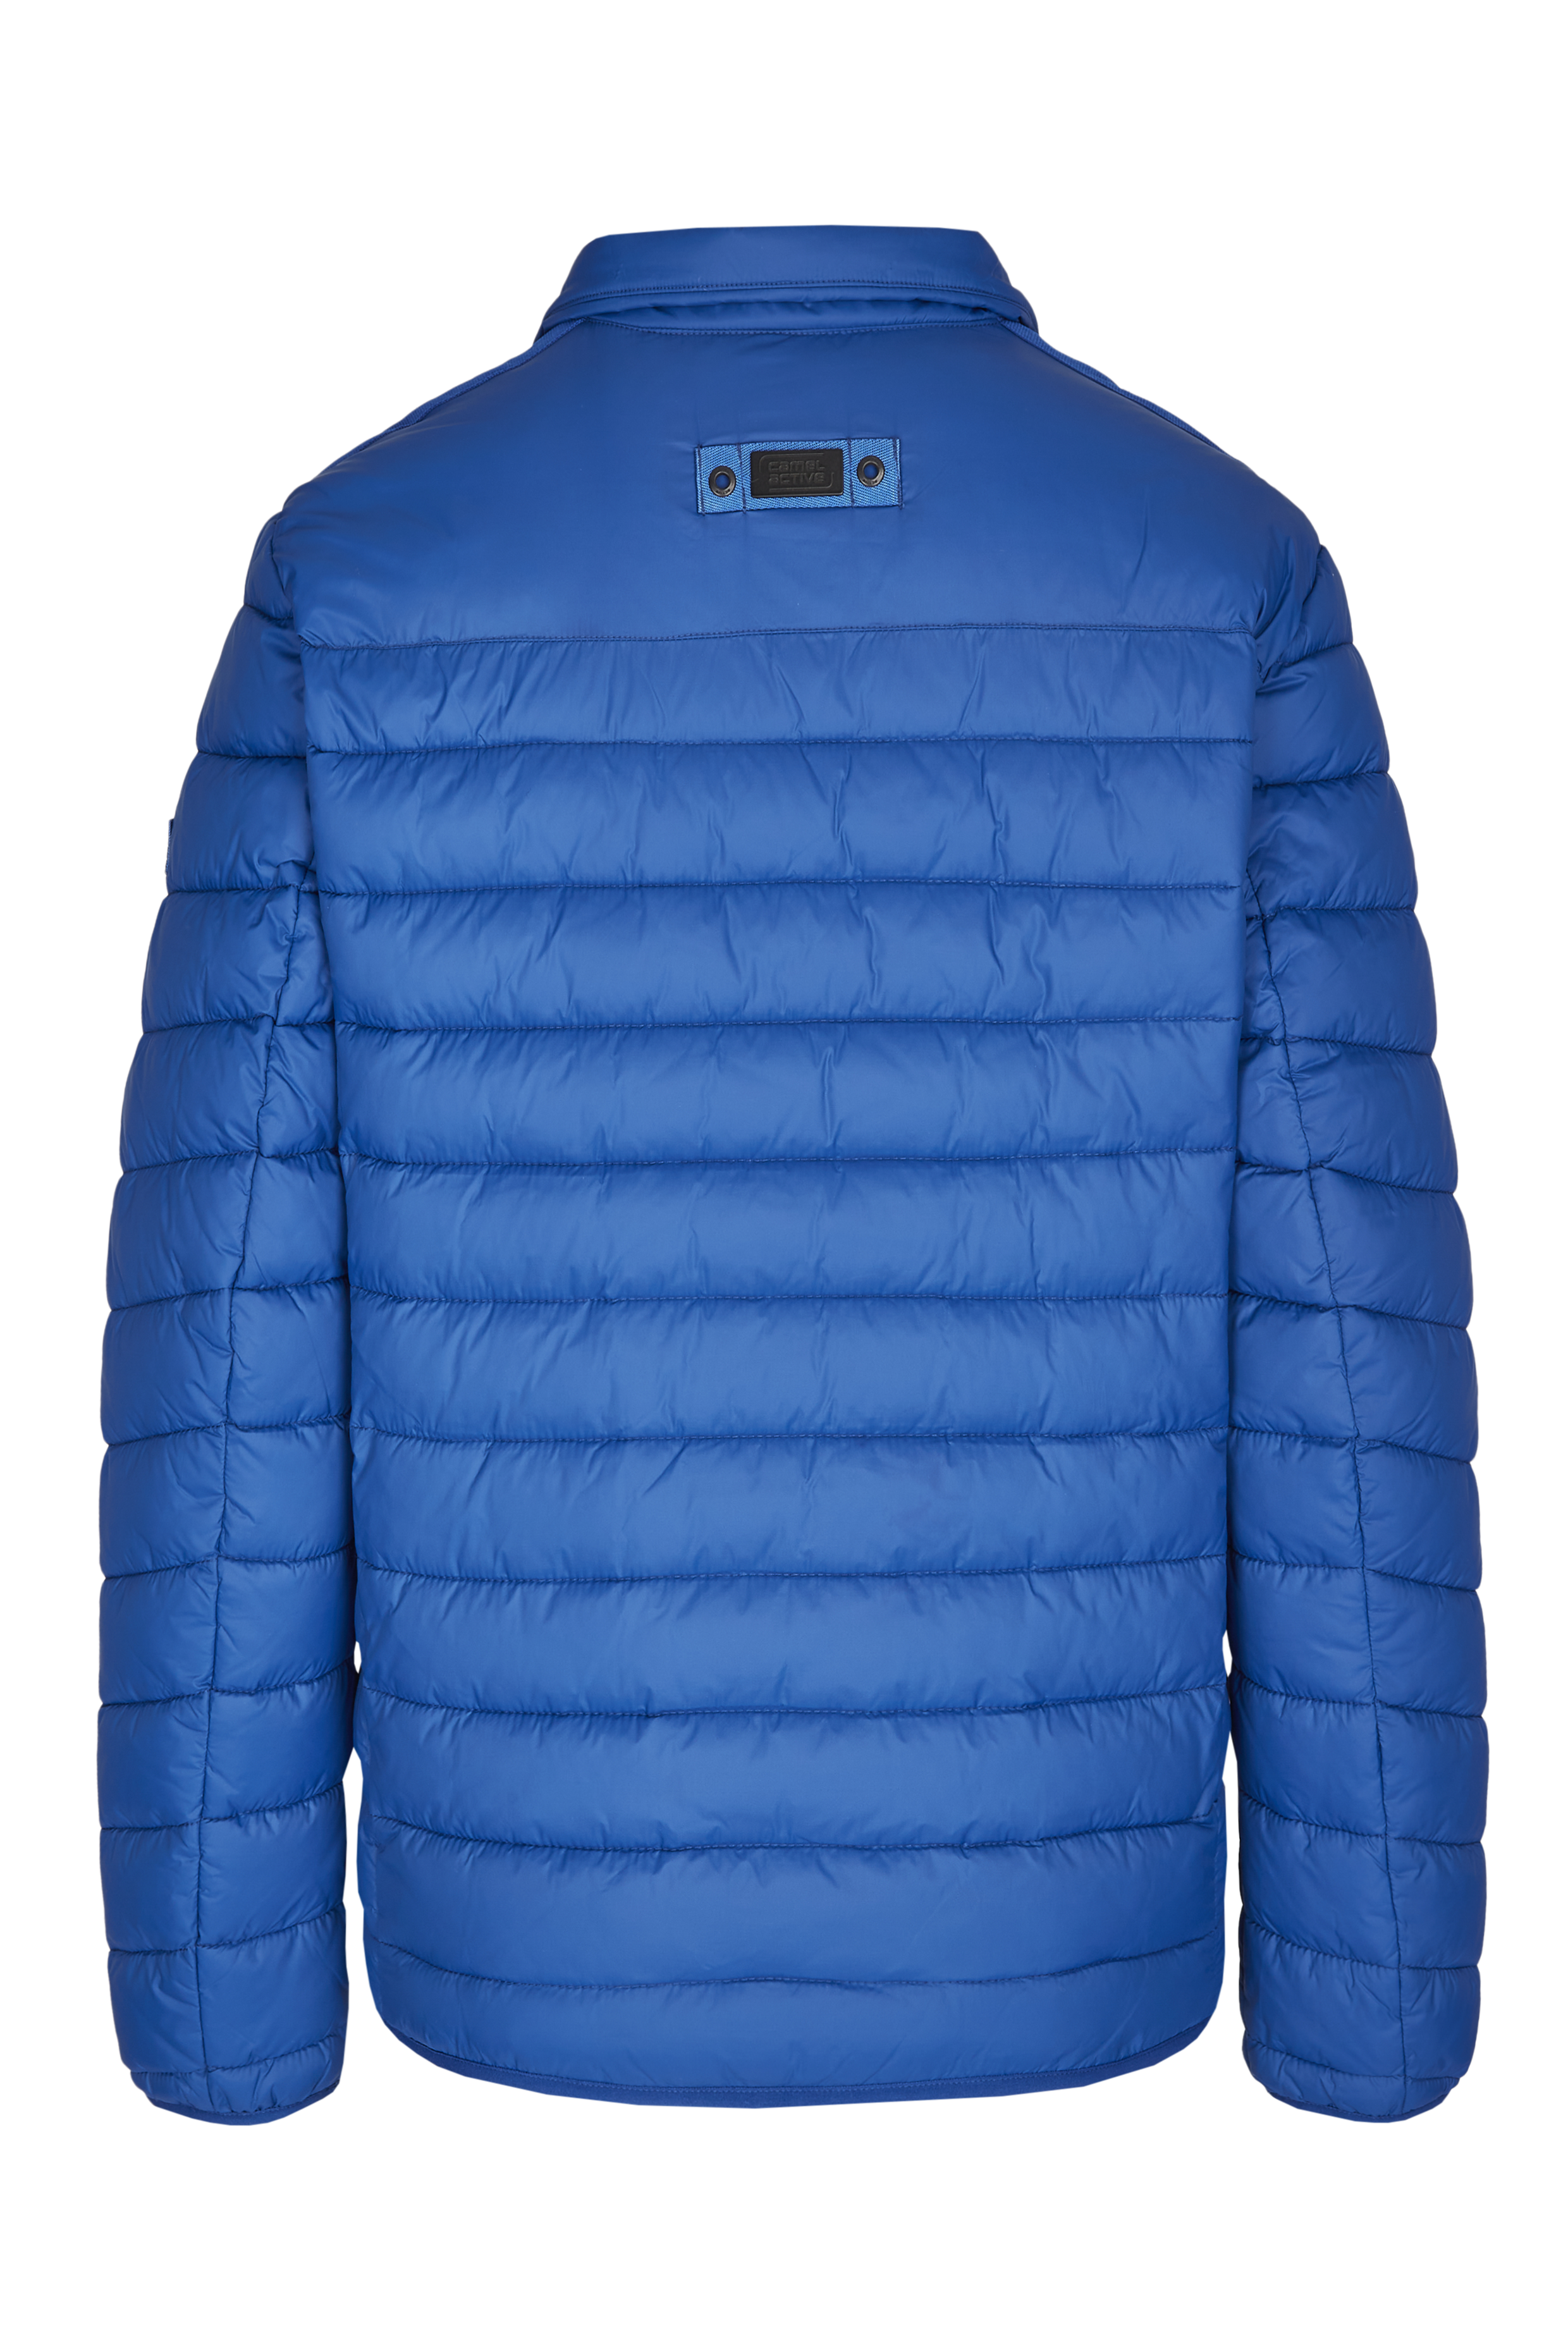 Мужская куртка Camel Active, синяя, цвет синий, размер 30 - фото 2